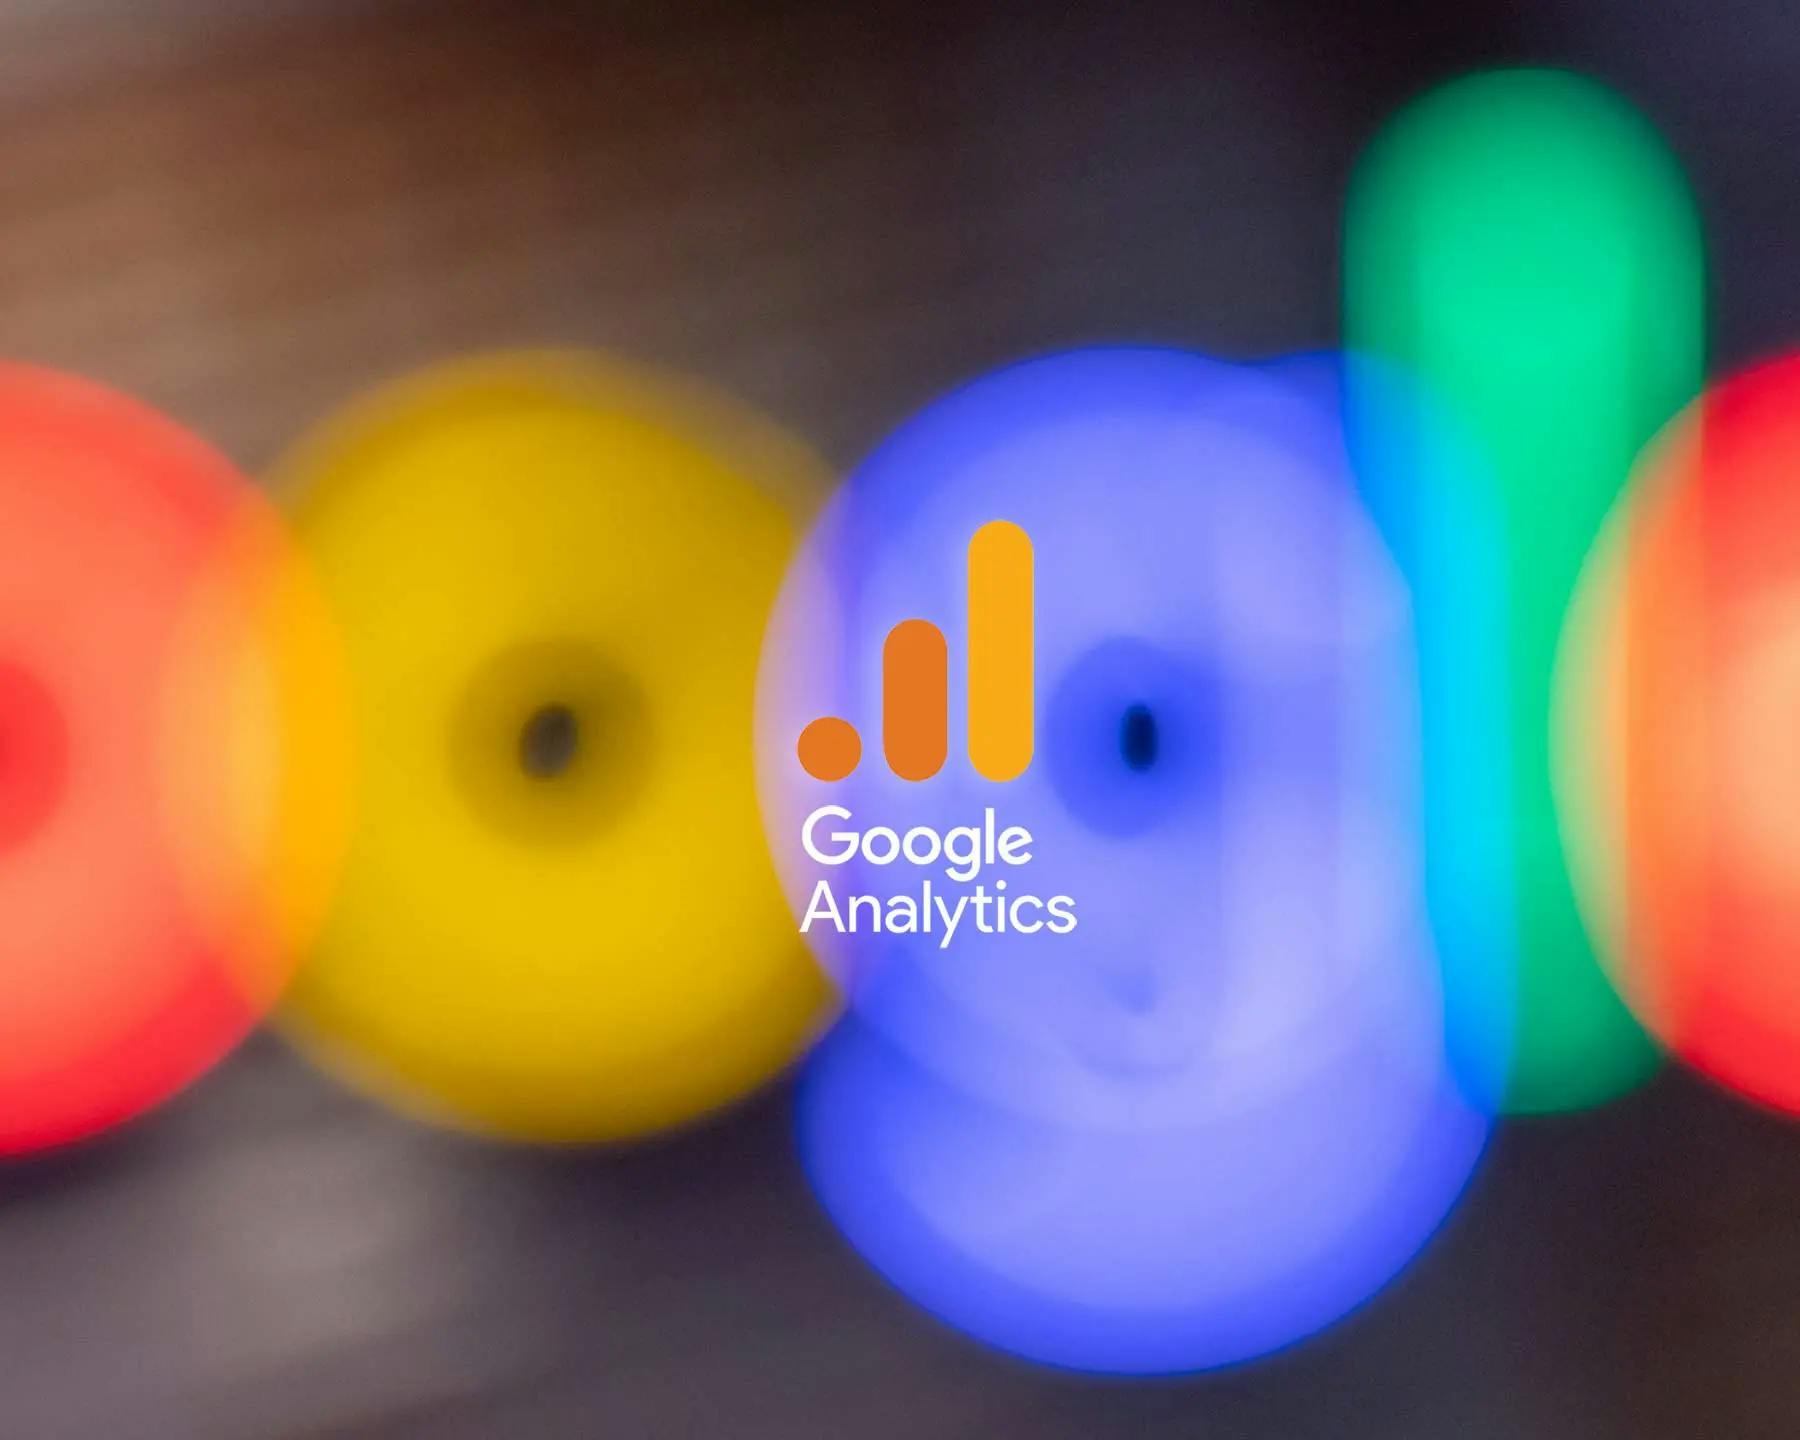 Google Analytics Banner